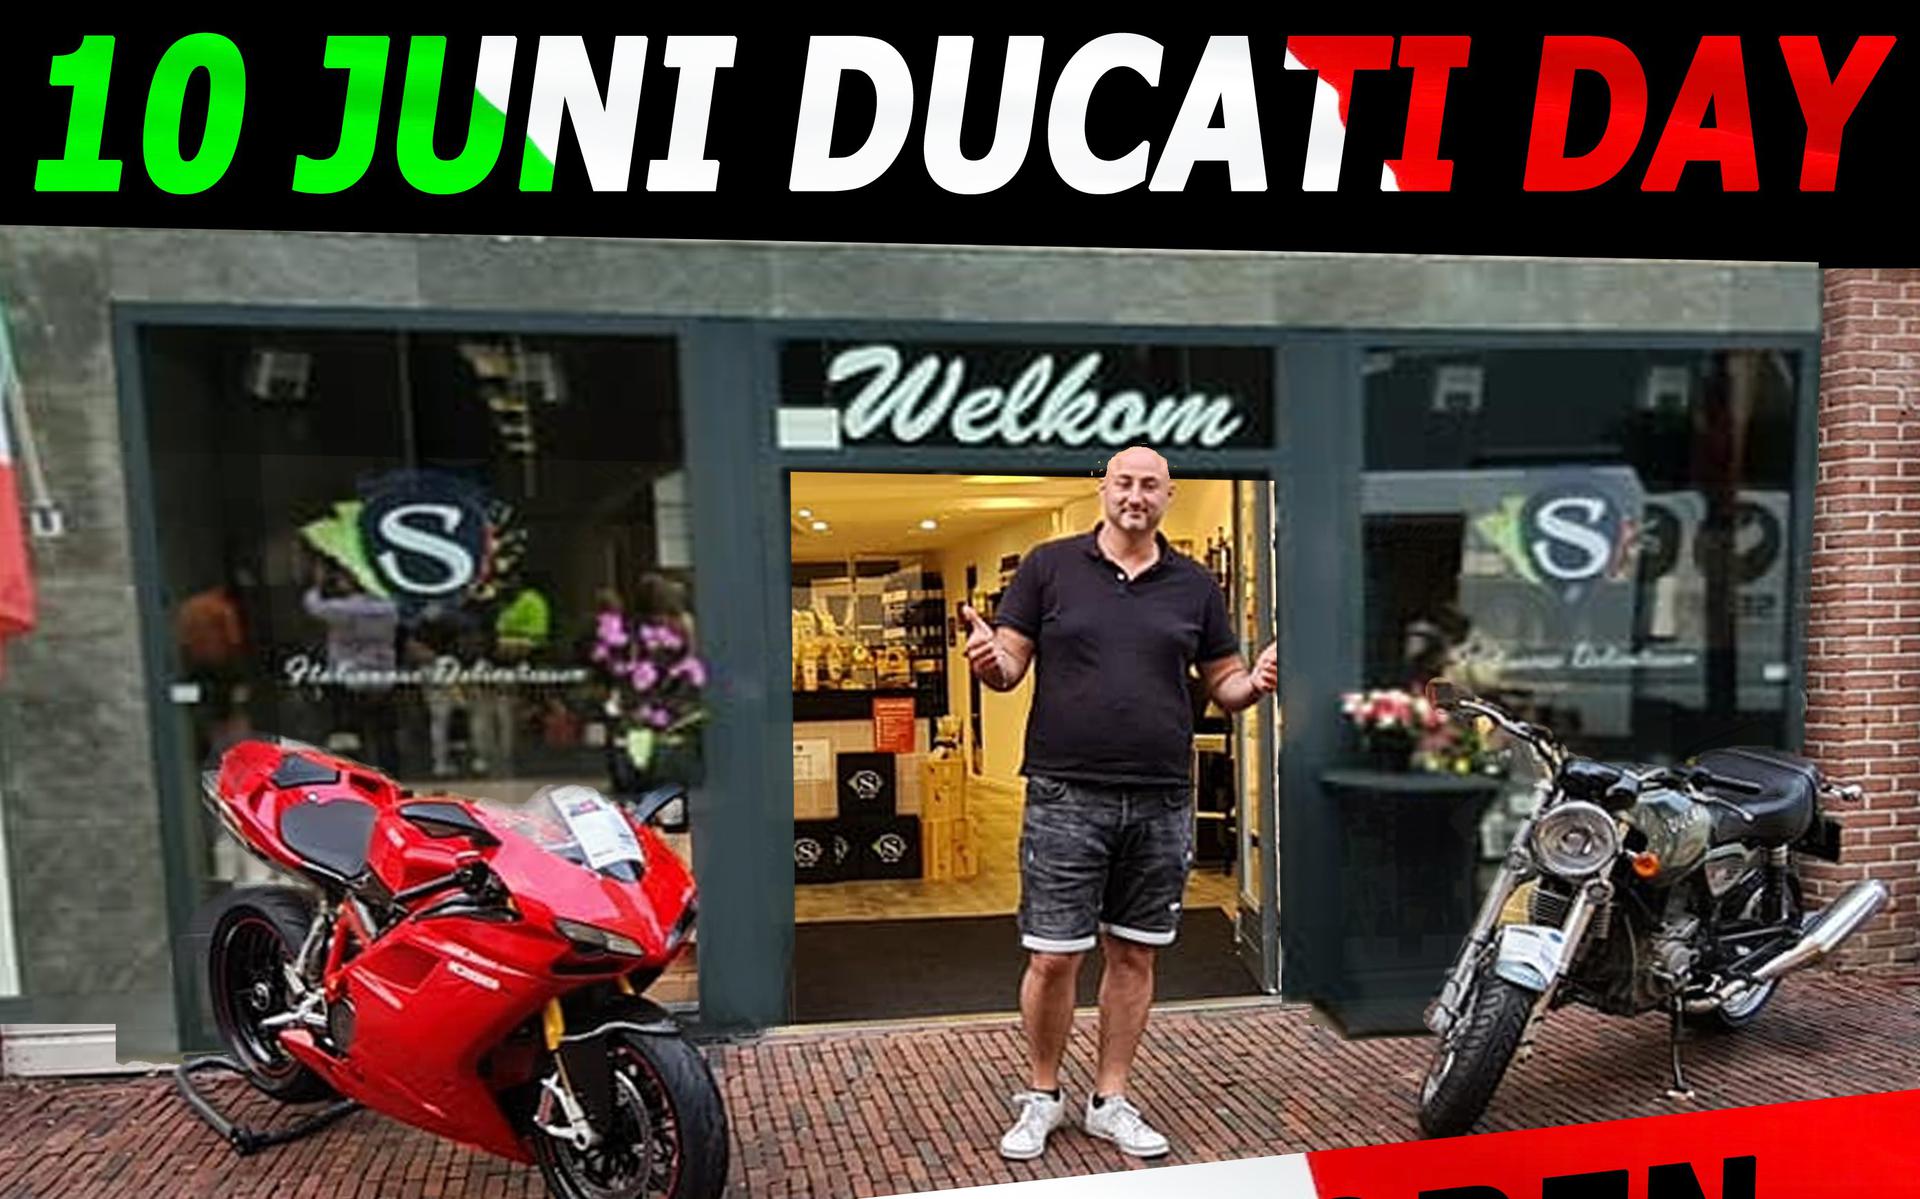 De flyer van Ducati Day.